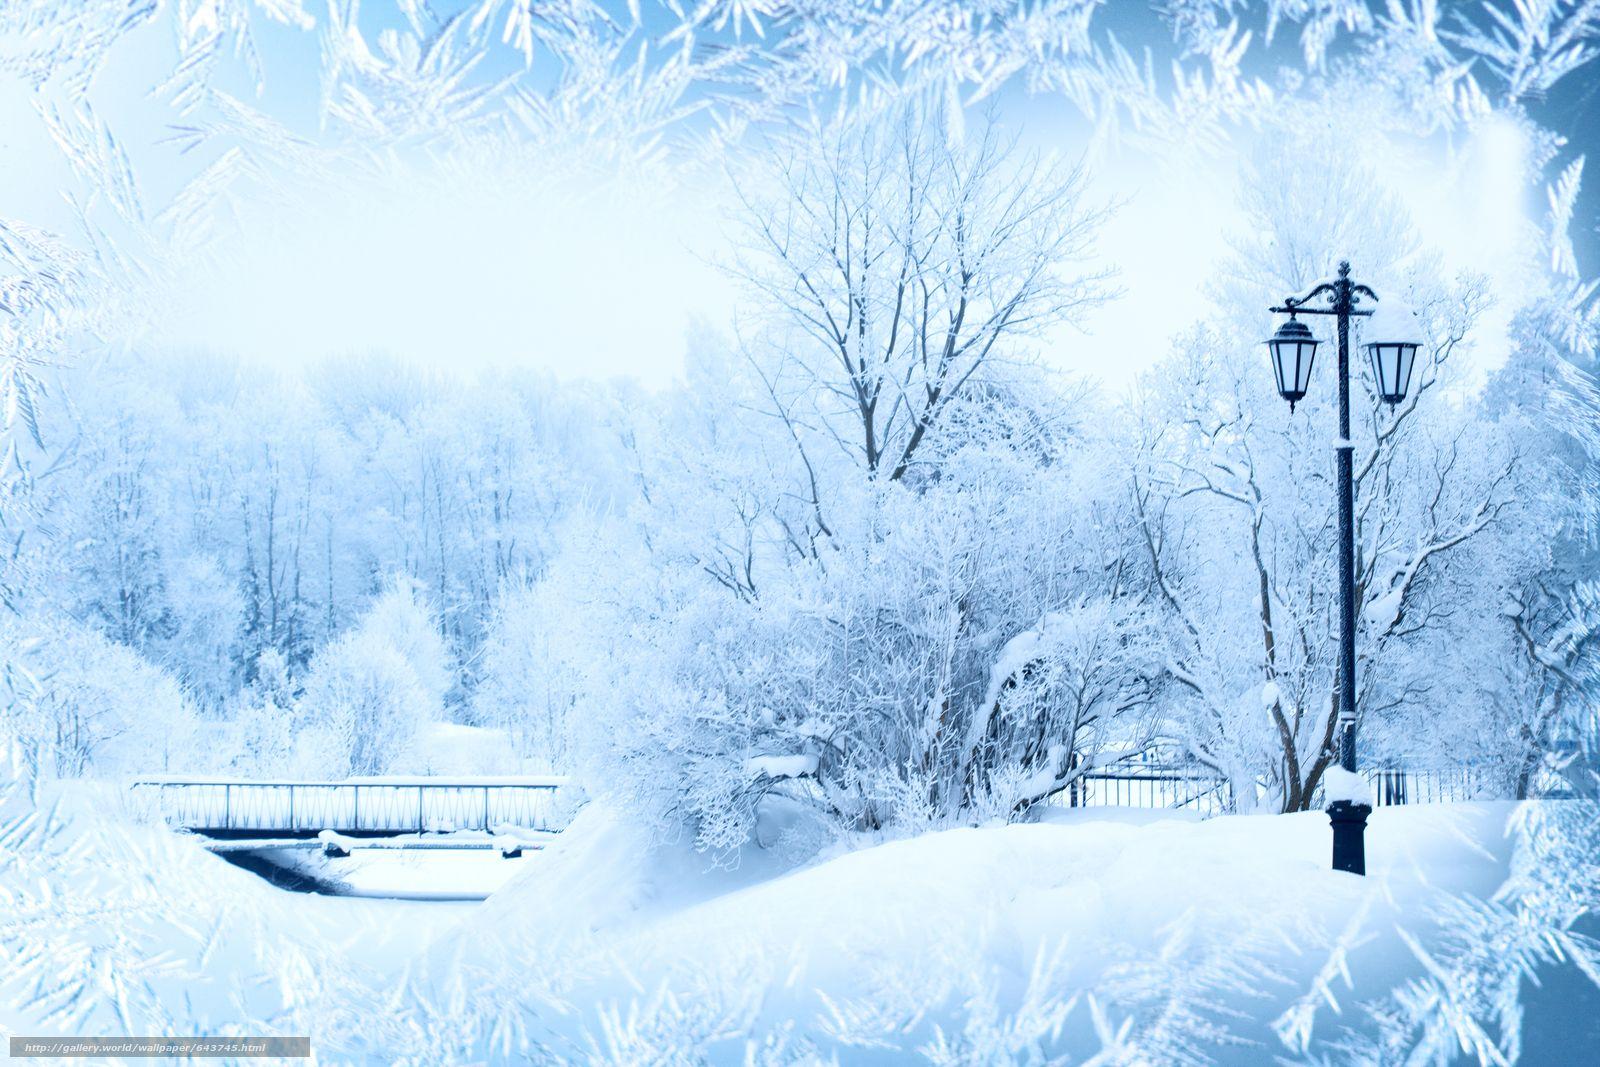 Скачать обои зима, мороз, узоры, деревья бесплатно для рабочего стола в  разрешении 5616x3744 — картинка … | Winter background, Winter backdrops,  Winter landscape